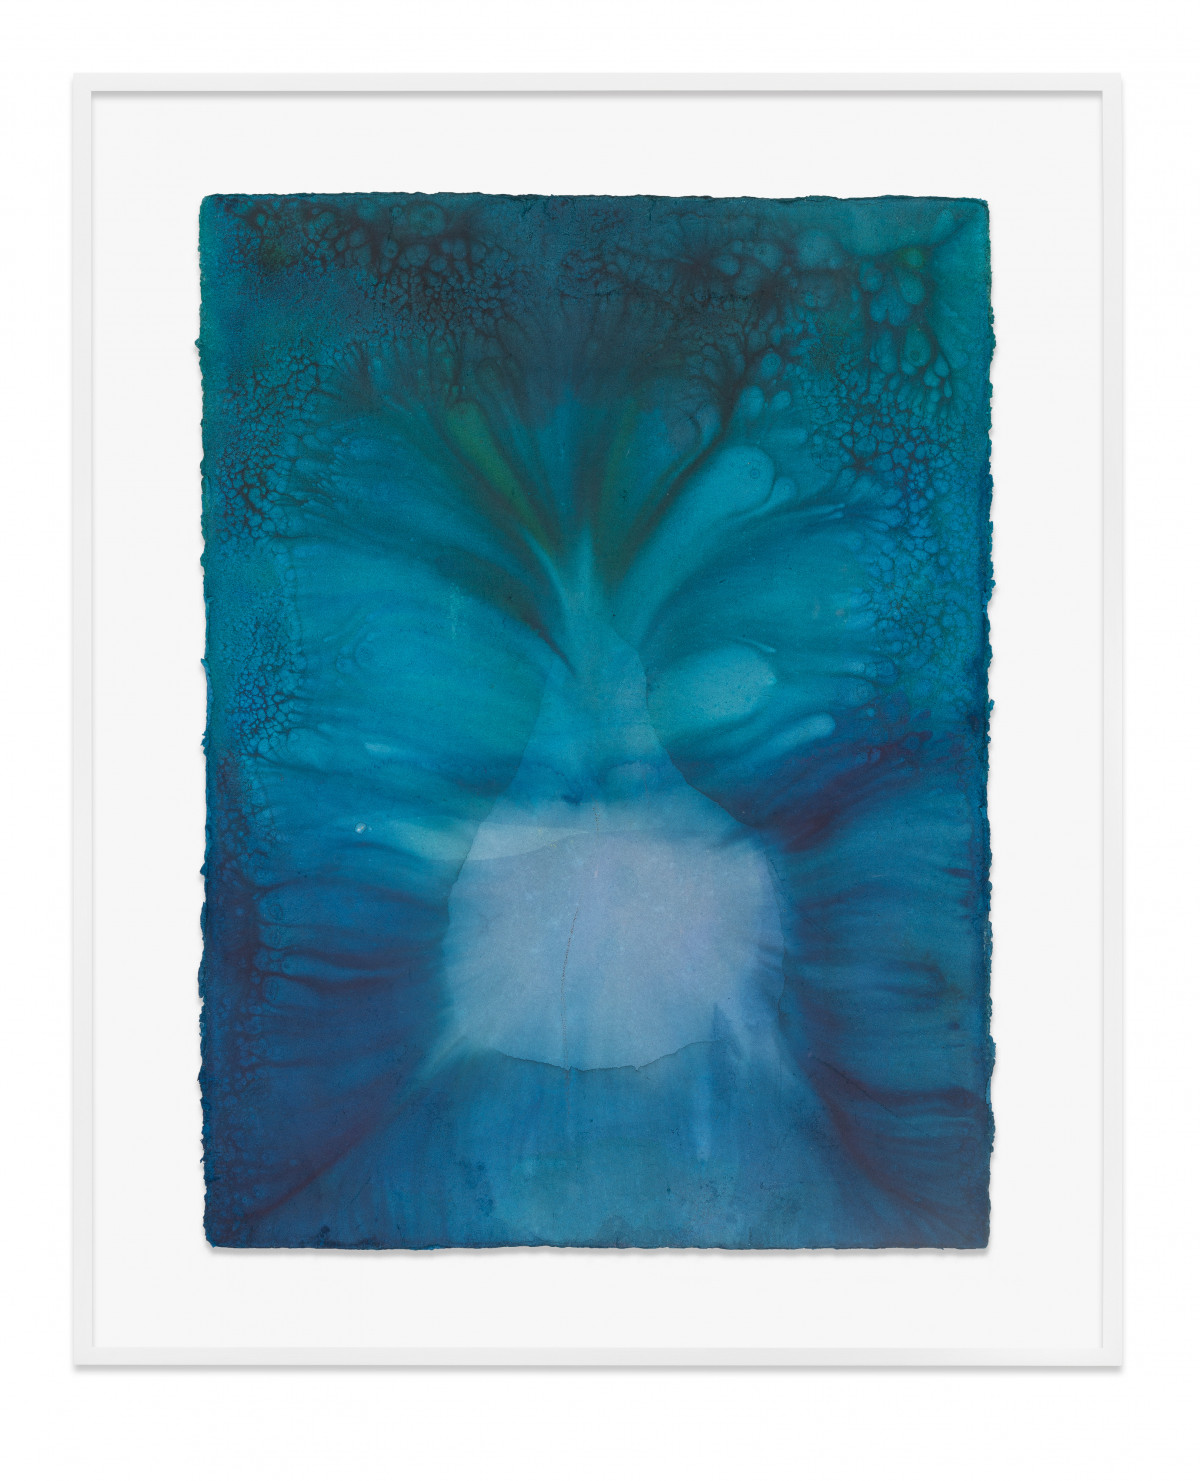 Jason Martin, ‘Alentejo Primavera (Peacock blue/Bright turquoise)’, 2022, Cold process dye on watercolour paper